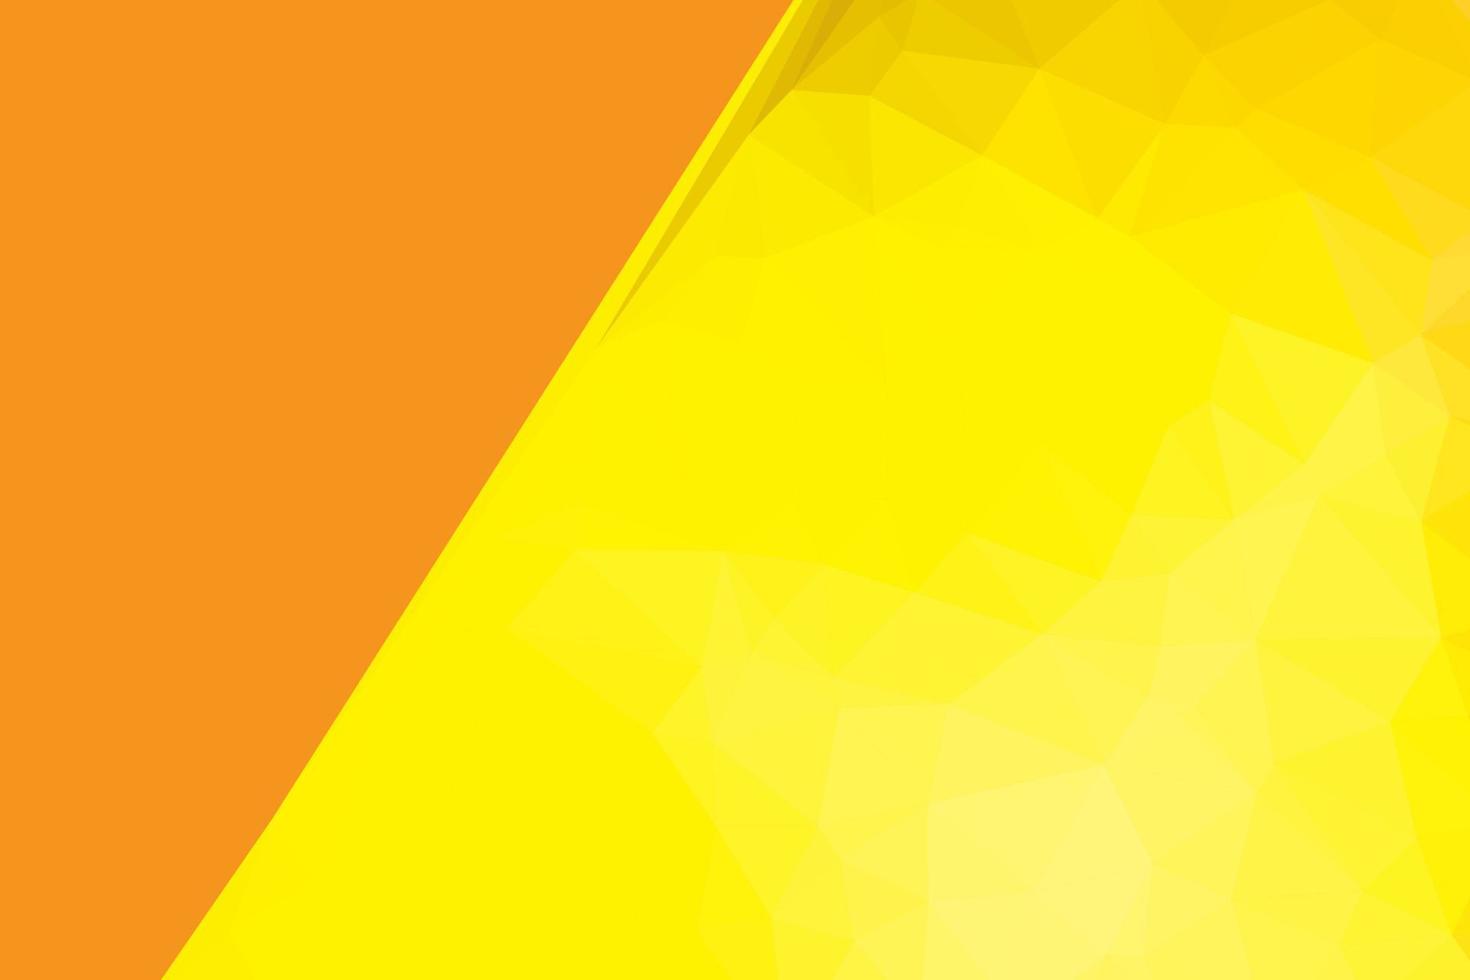 fond abstrait jaune et orange, formes triangulaires texturées low poly dans un motif aléatoire, vecteur libre de fond lowpoly à la mode